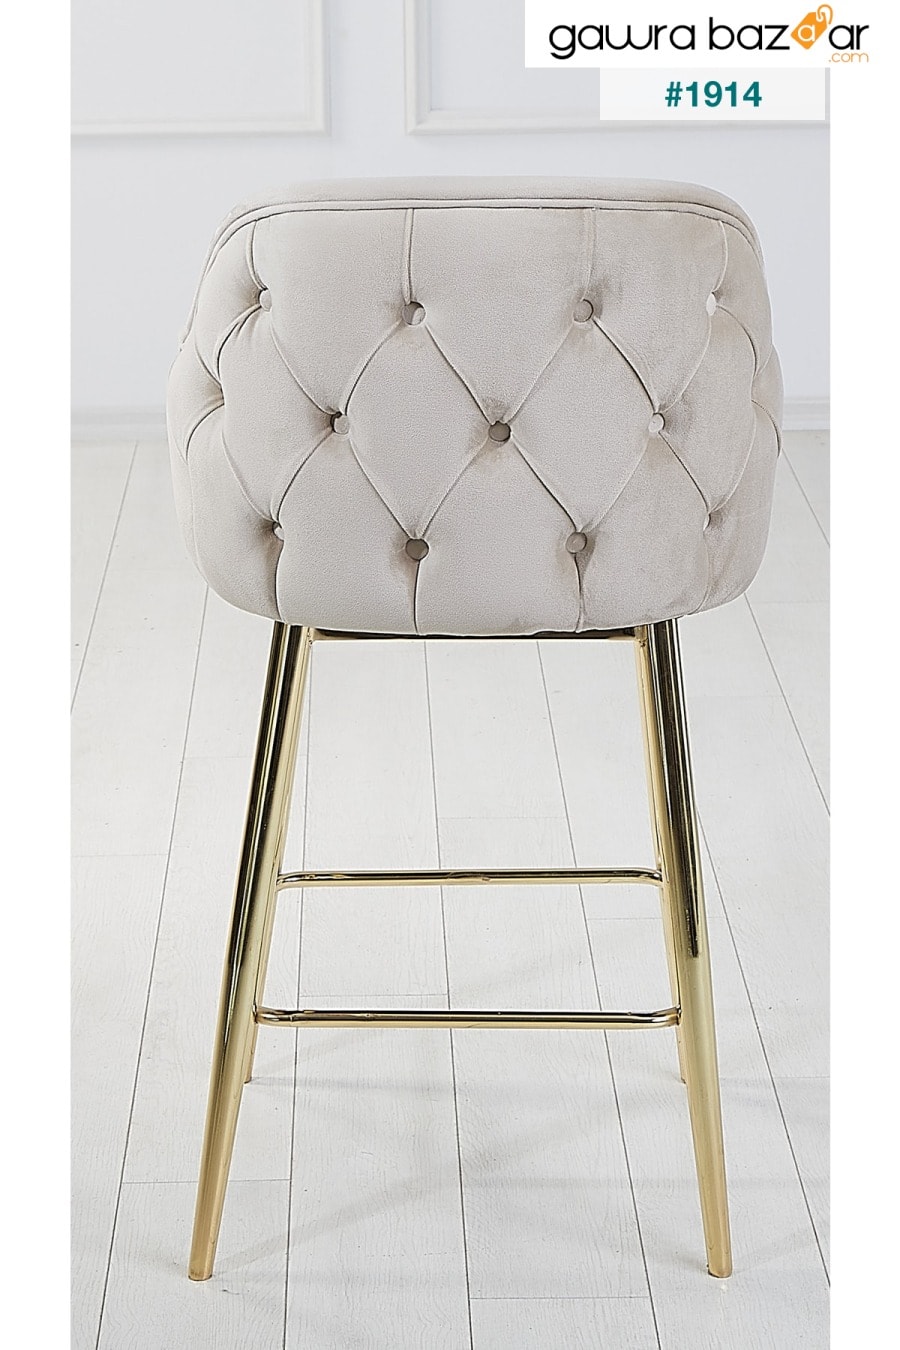 2 قطعة كرسي مطبخ وبار من تيتان أدا - كرسي مرتفع - قماش قابل للإزالة للوجه - أرجل ذهبية Pİ MOBİLYA 3